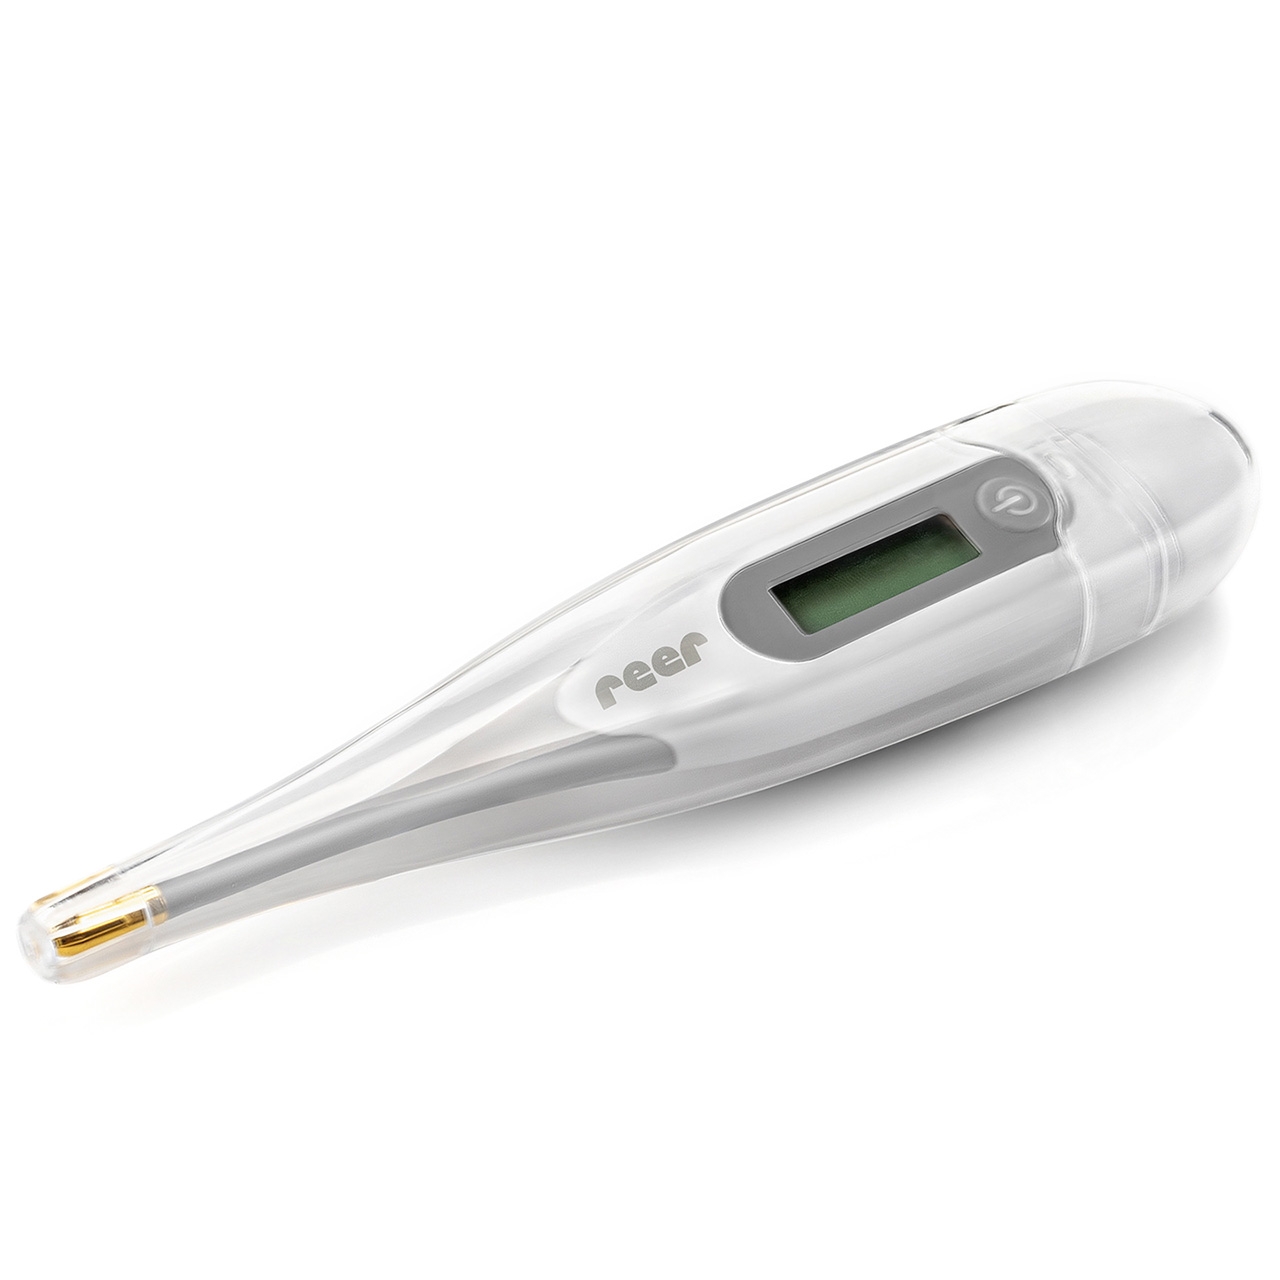 Express Fieberthermometer mit flexibler Spitze – 10 Sekunden